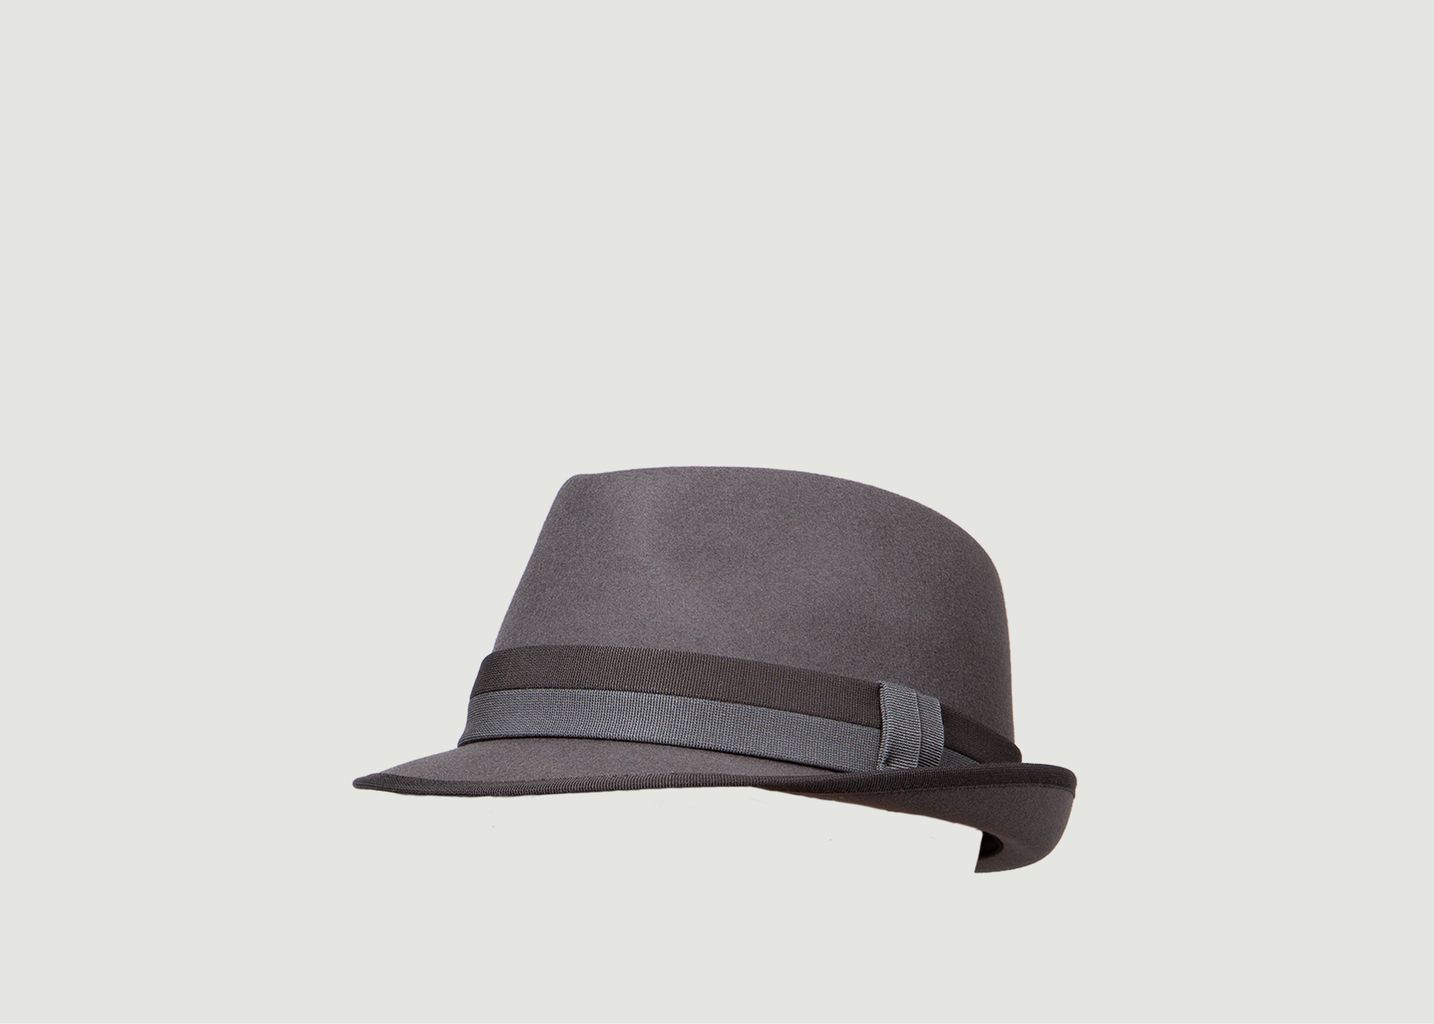 Jean Gabin hat - Courtois Paris